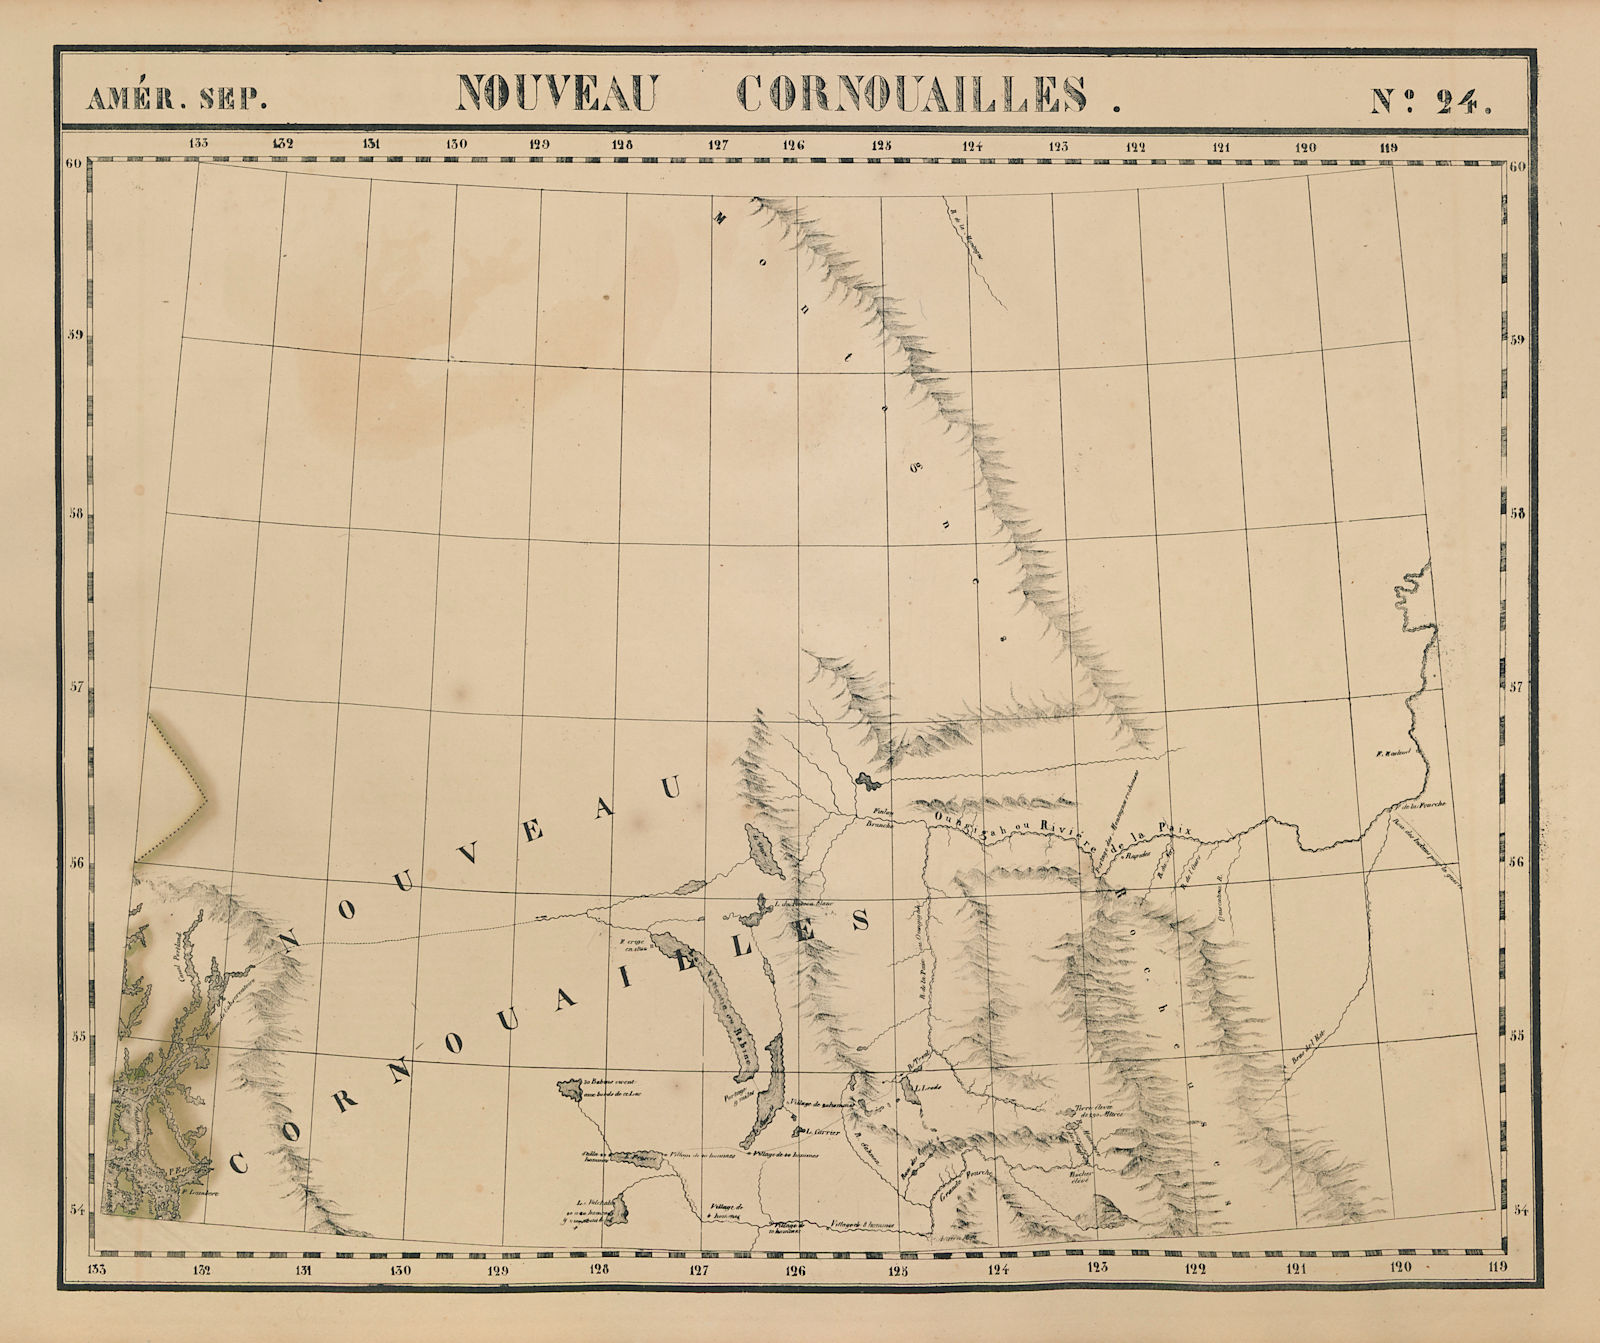 Amér. Sep. Nouveau Cornouailles #24 British Columbia North VANDERMAELEN 1827 map